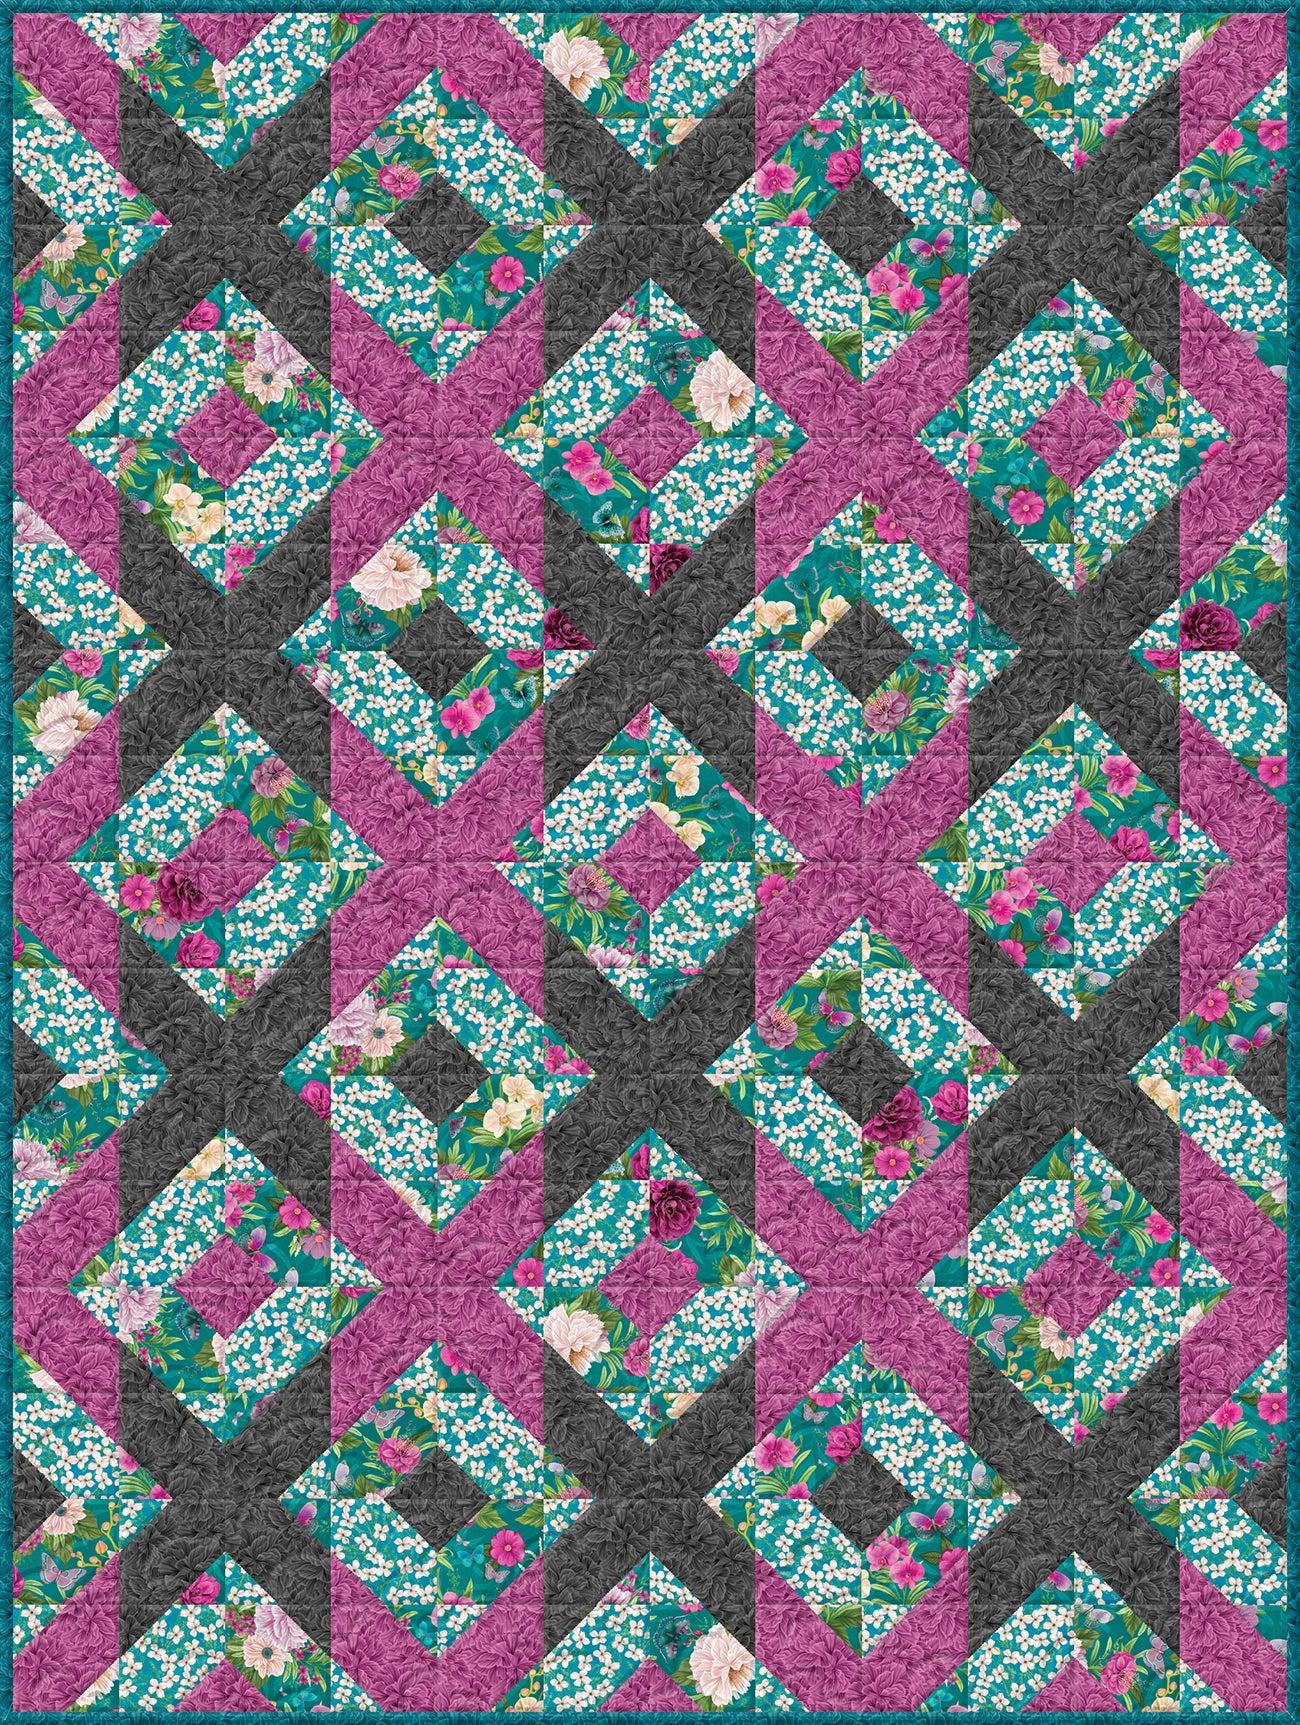 Midnight Garden Medium Throw Quilt Kit-Wilmington Prints-My Favorite Quilt Store